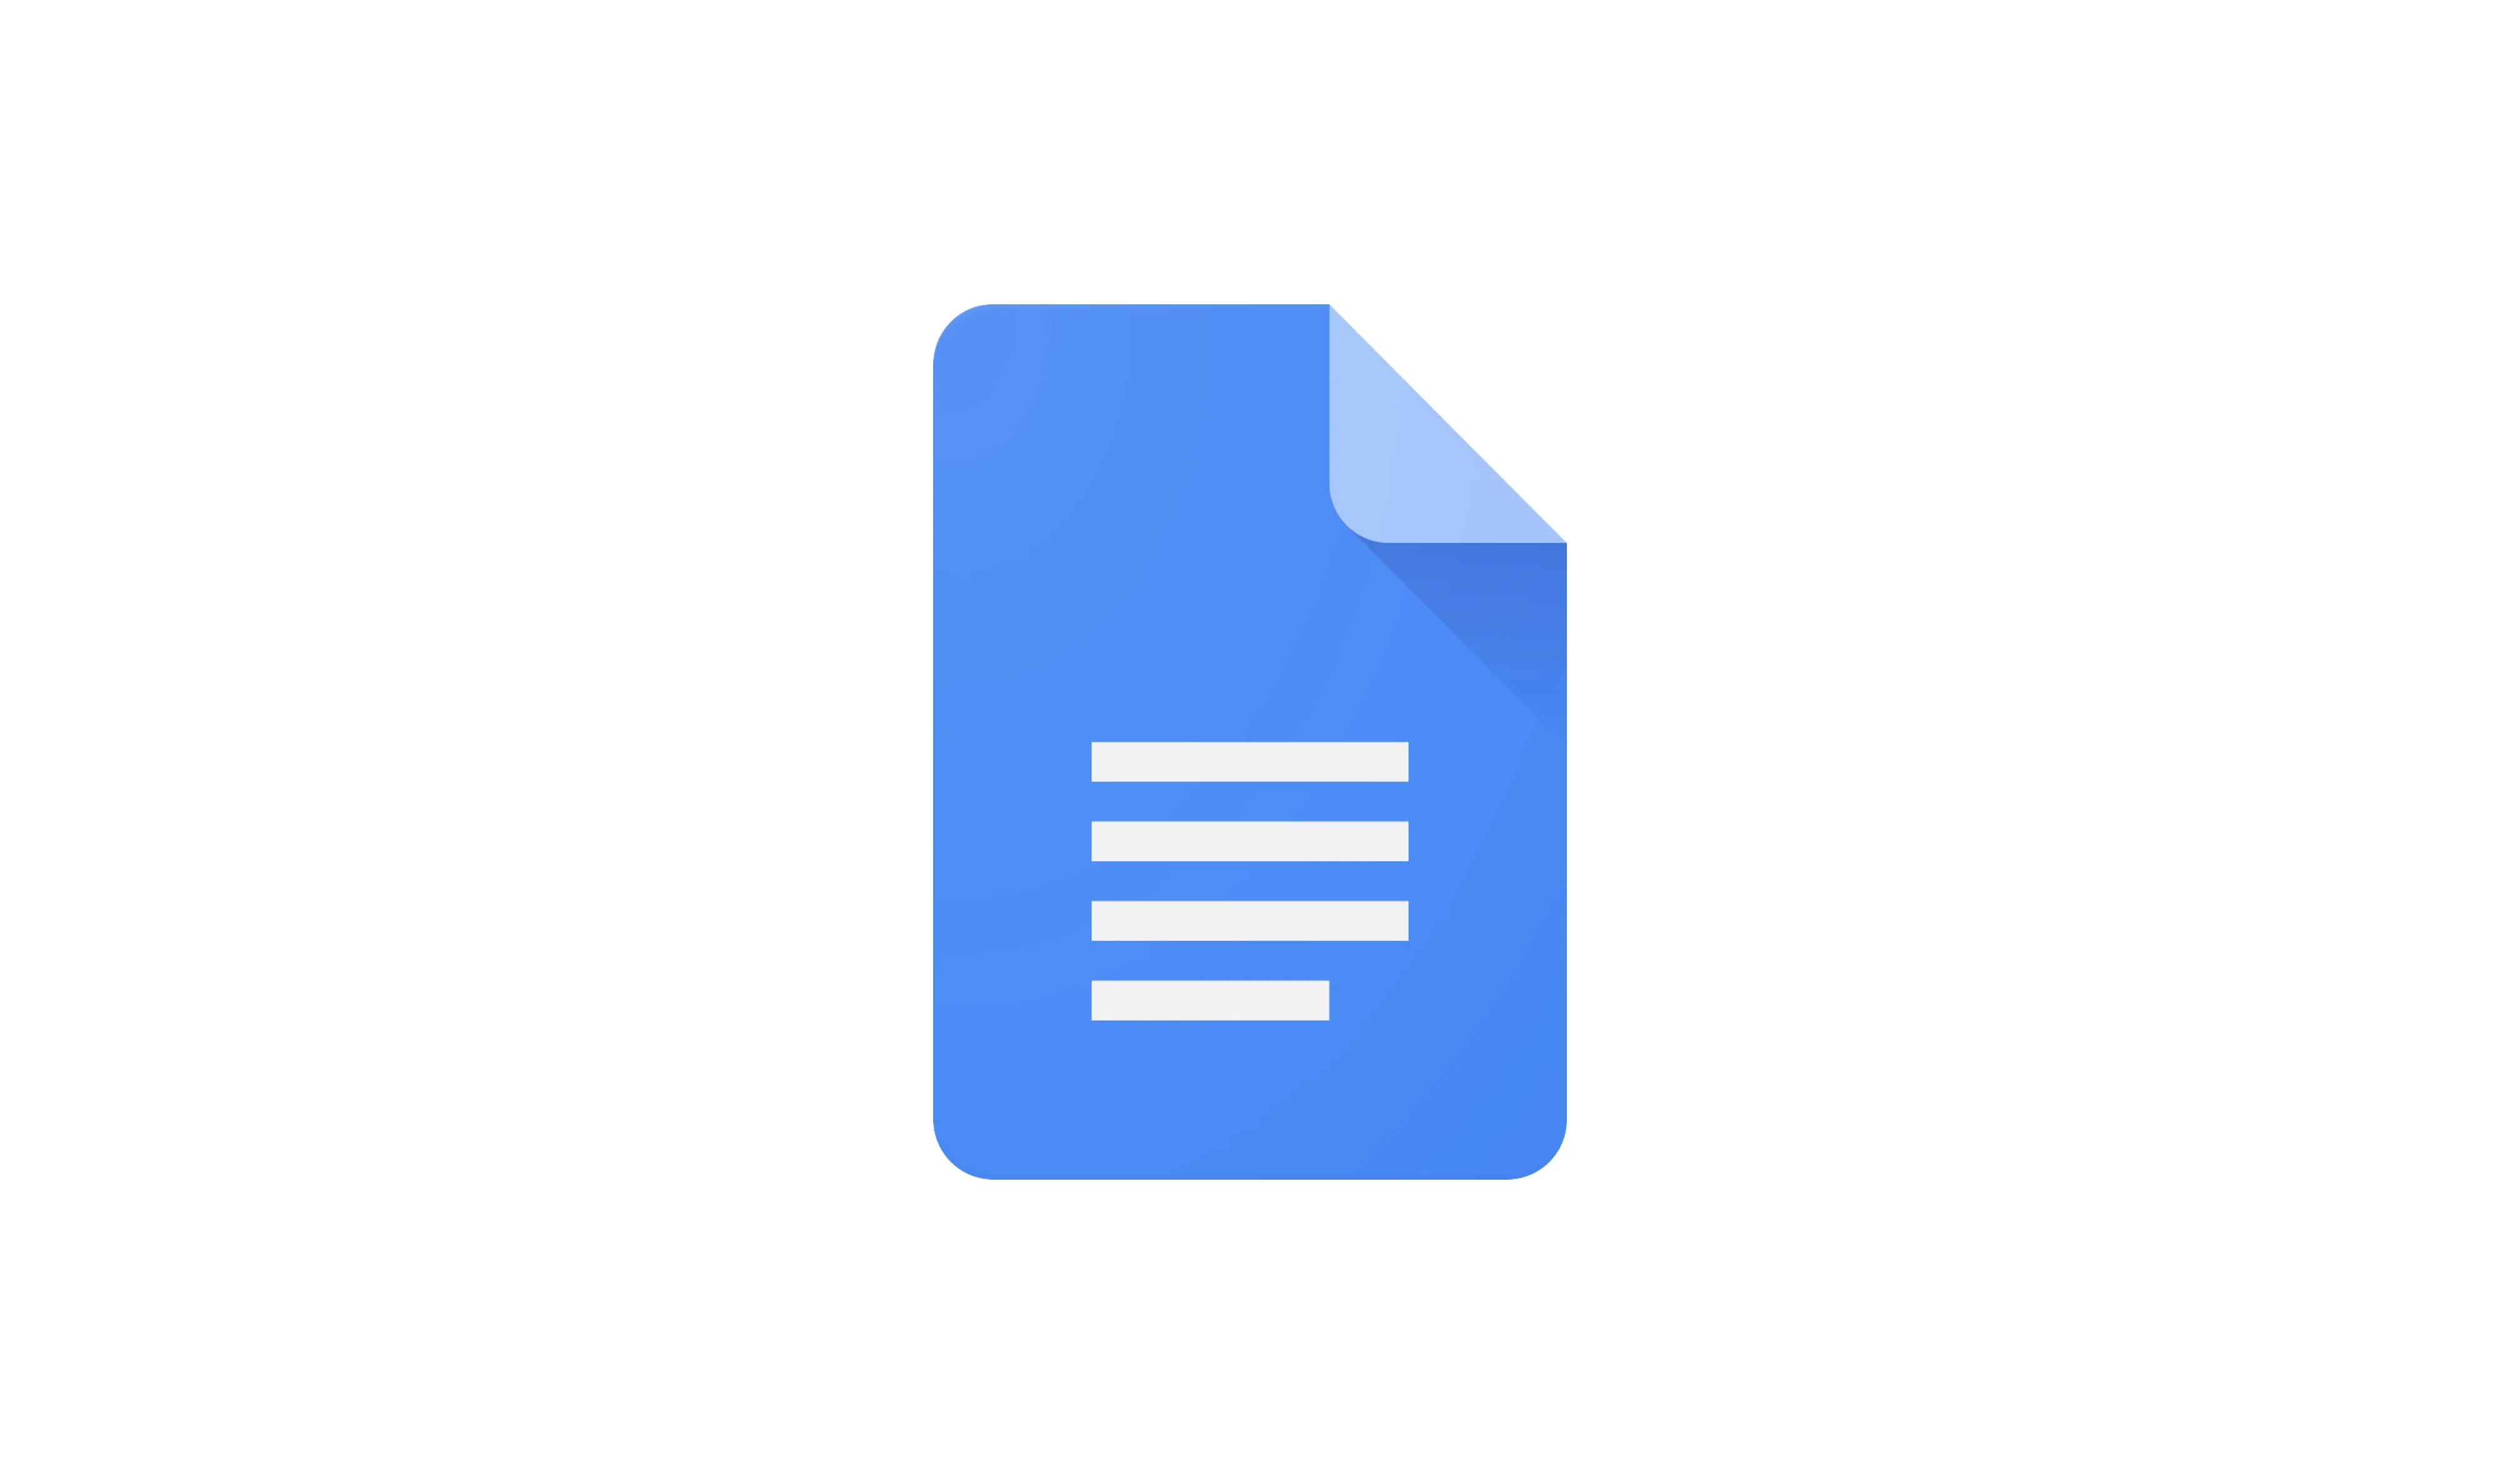 Гуглдок. Google документы. Гугл документы логотип. Значок файла. Иконка текстового документа.